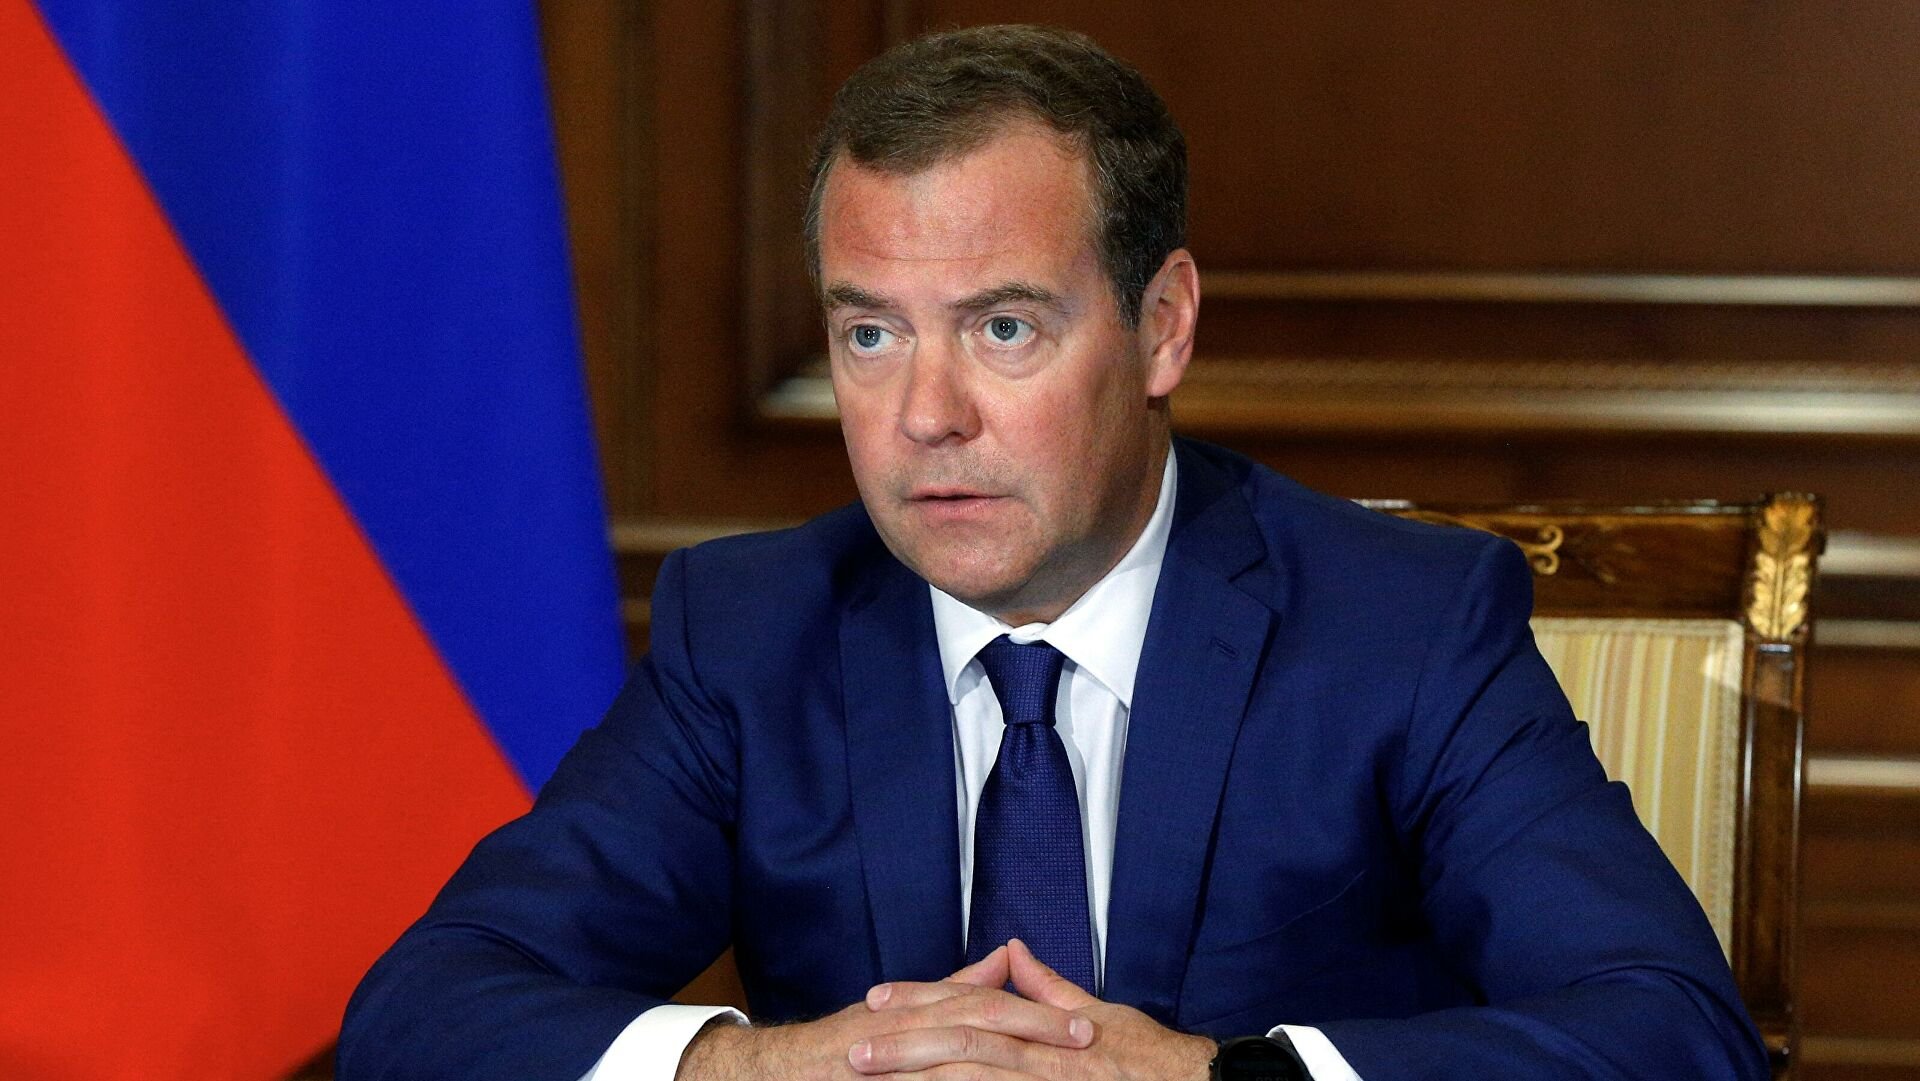 Дмитрий Медведев фразой «позорное фрик-шоу» охарактеризовал Олимпиаду в Париже